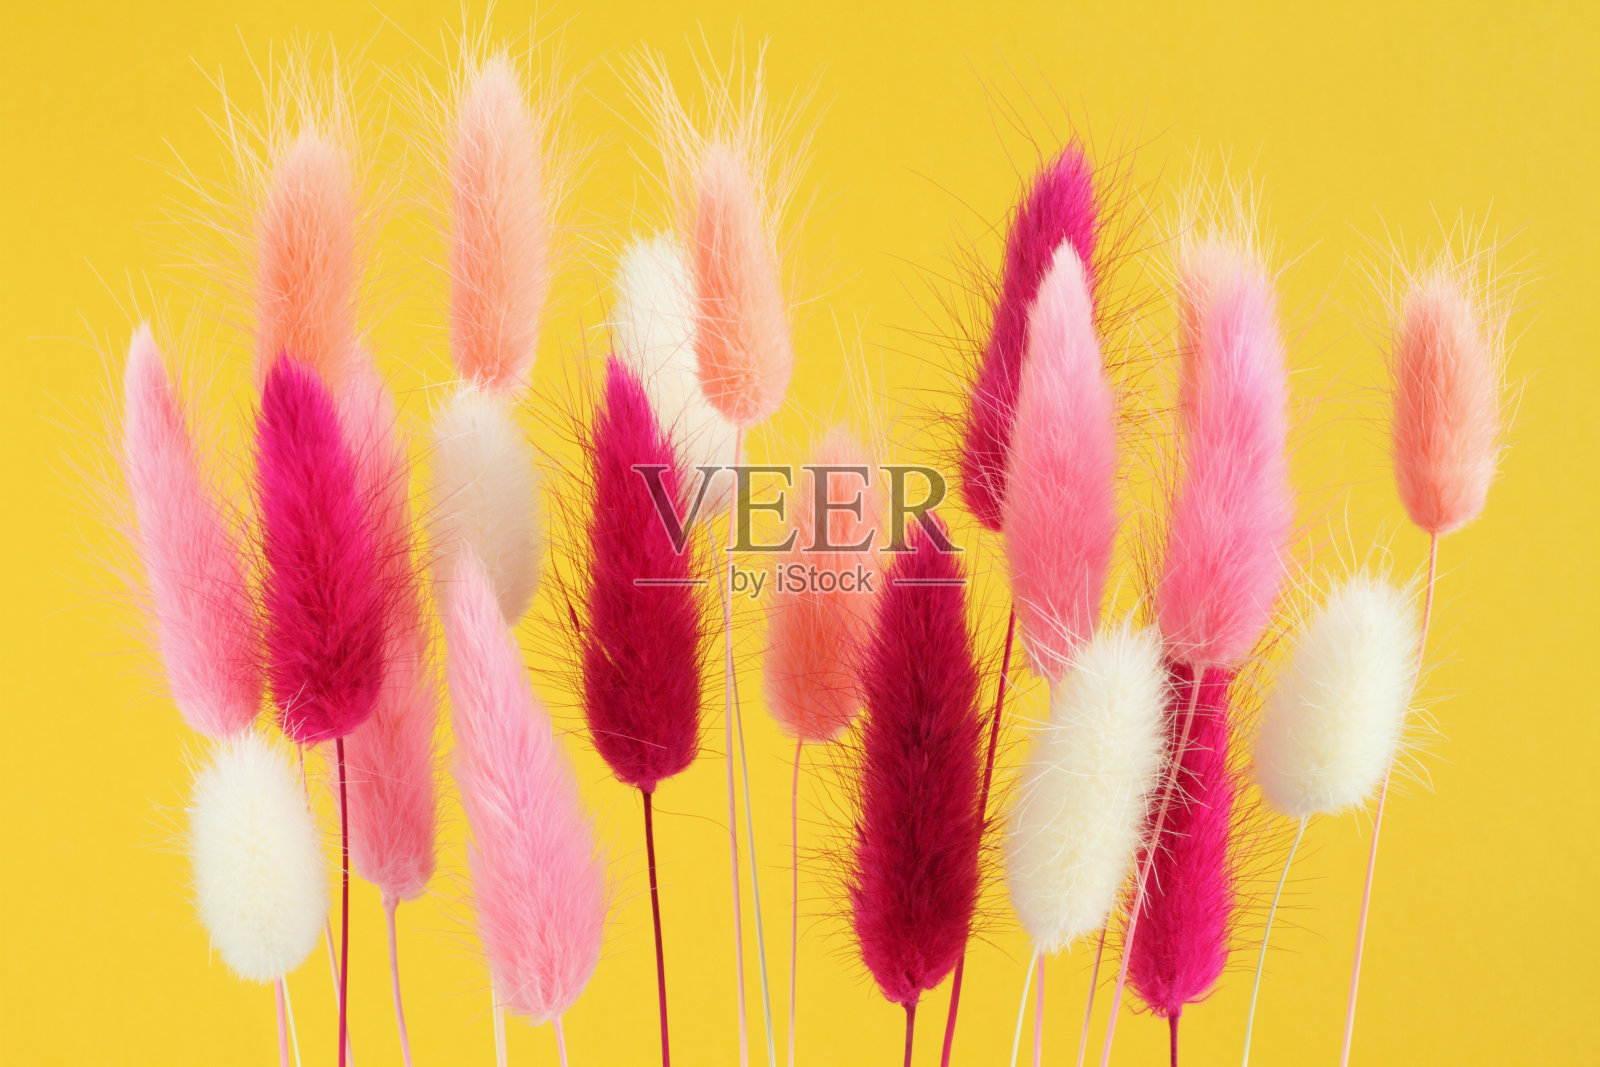 粉红色，白色，浅珊瑚和洋红颜色的山楂花(兔尾草)在黄色的背景。特写镜头照片摄影图片